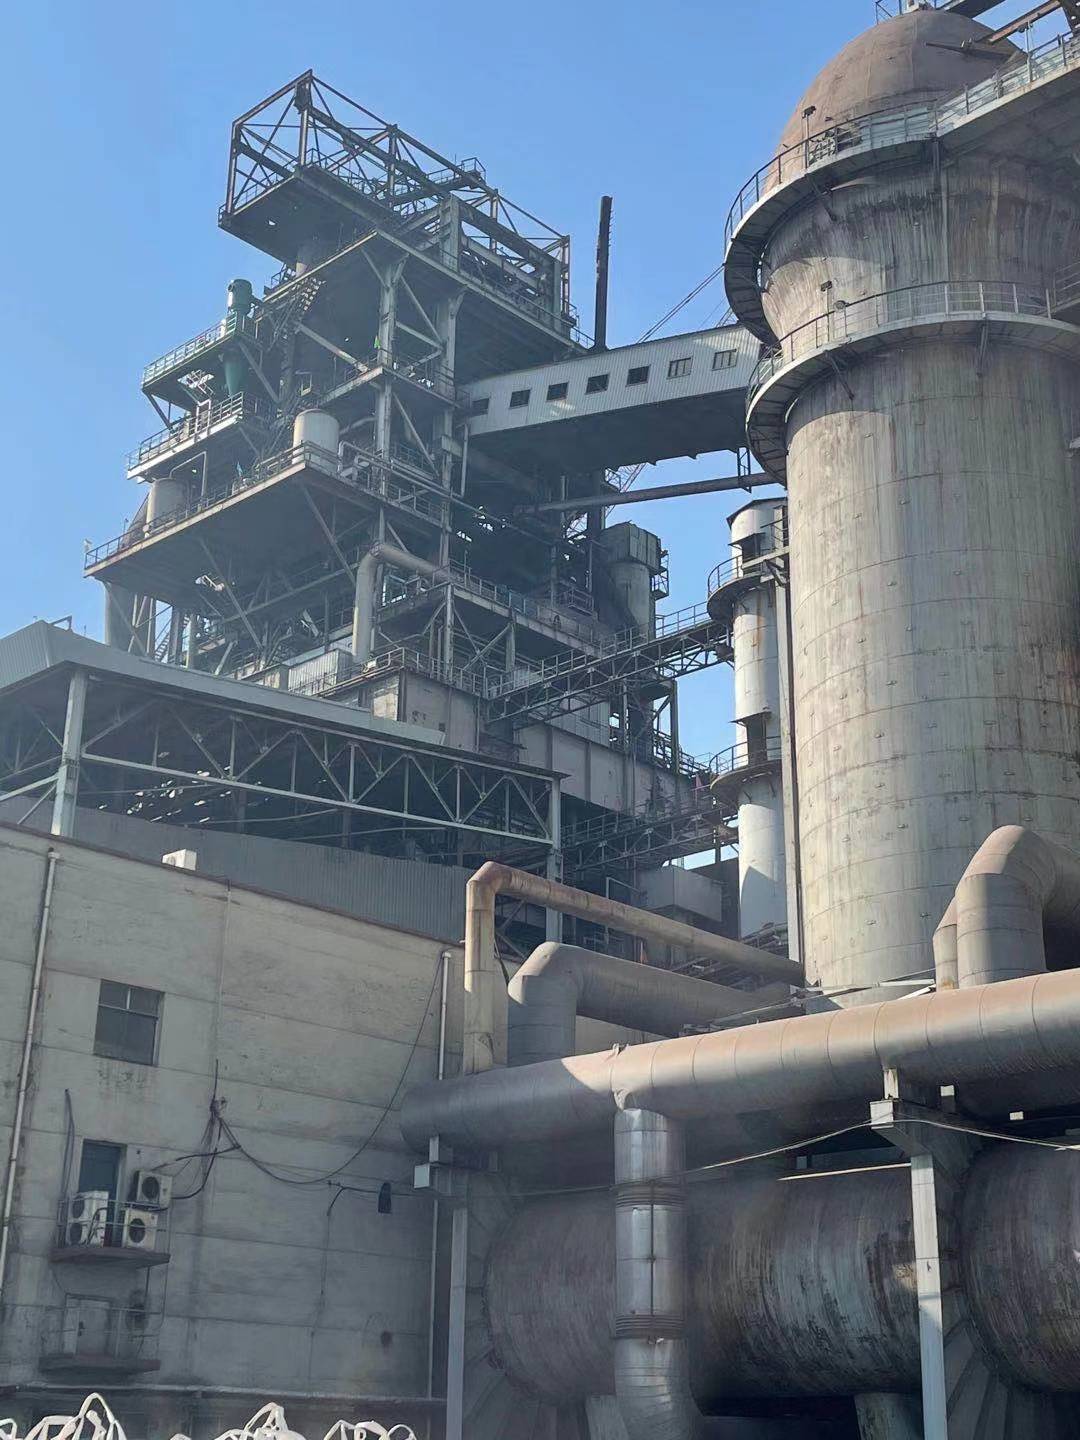 內蒙某鋼鐵公司2500m3高爐內襯濕法噴注工程